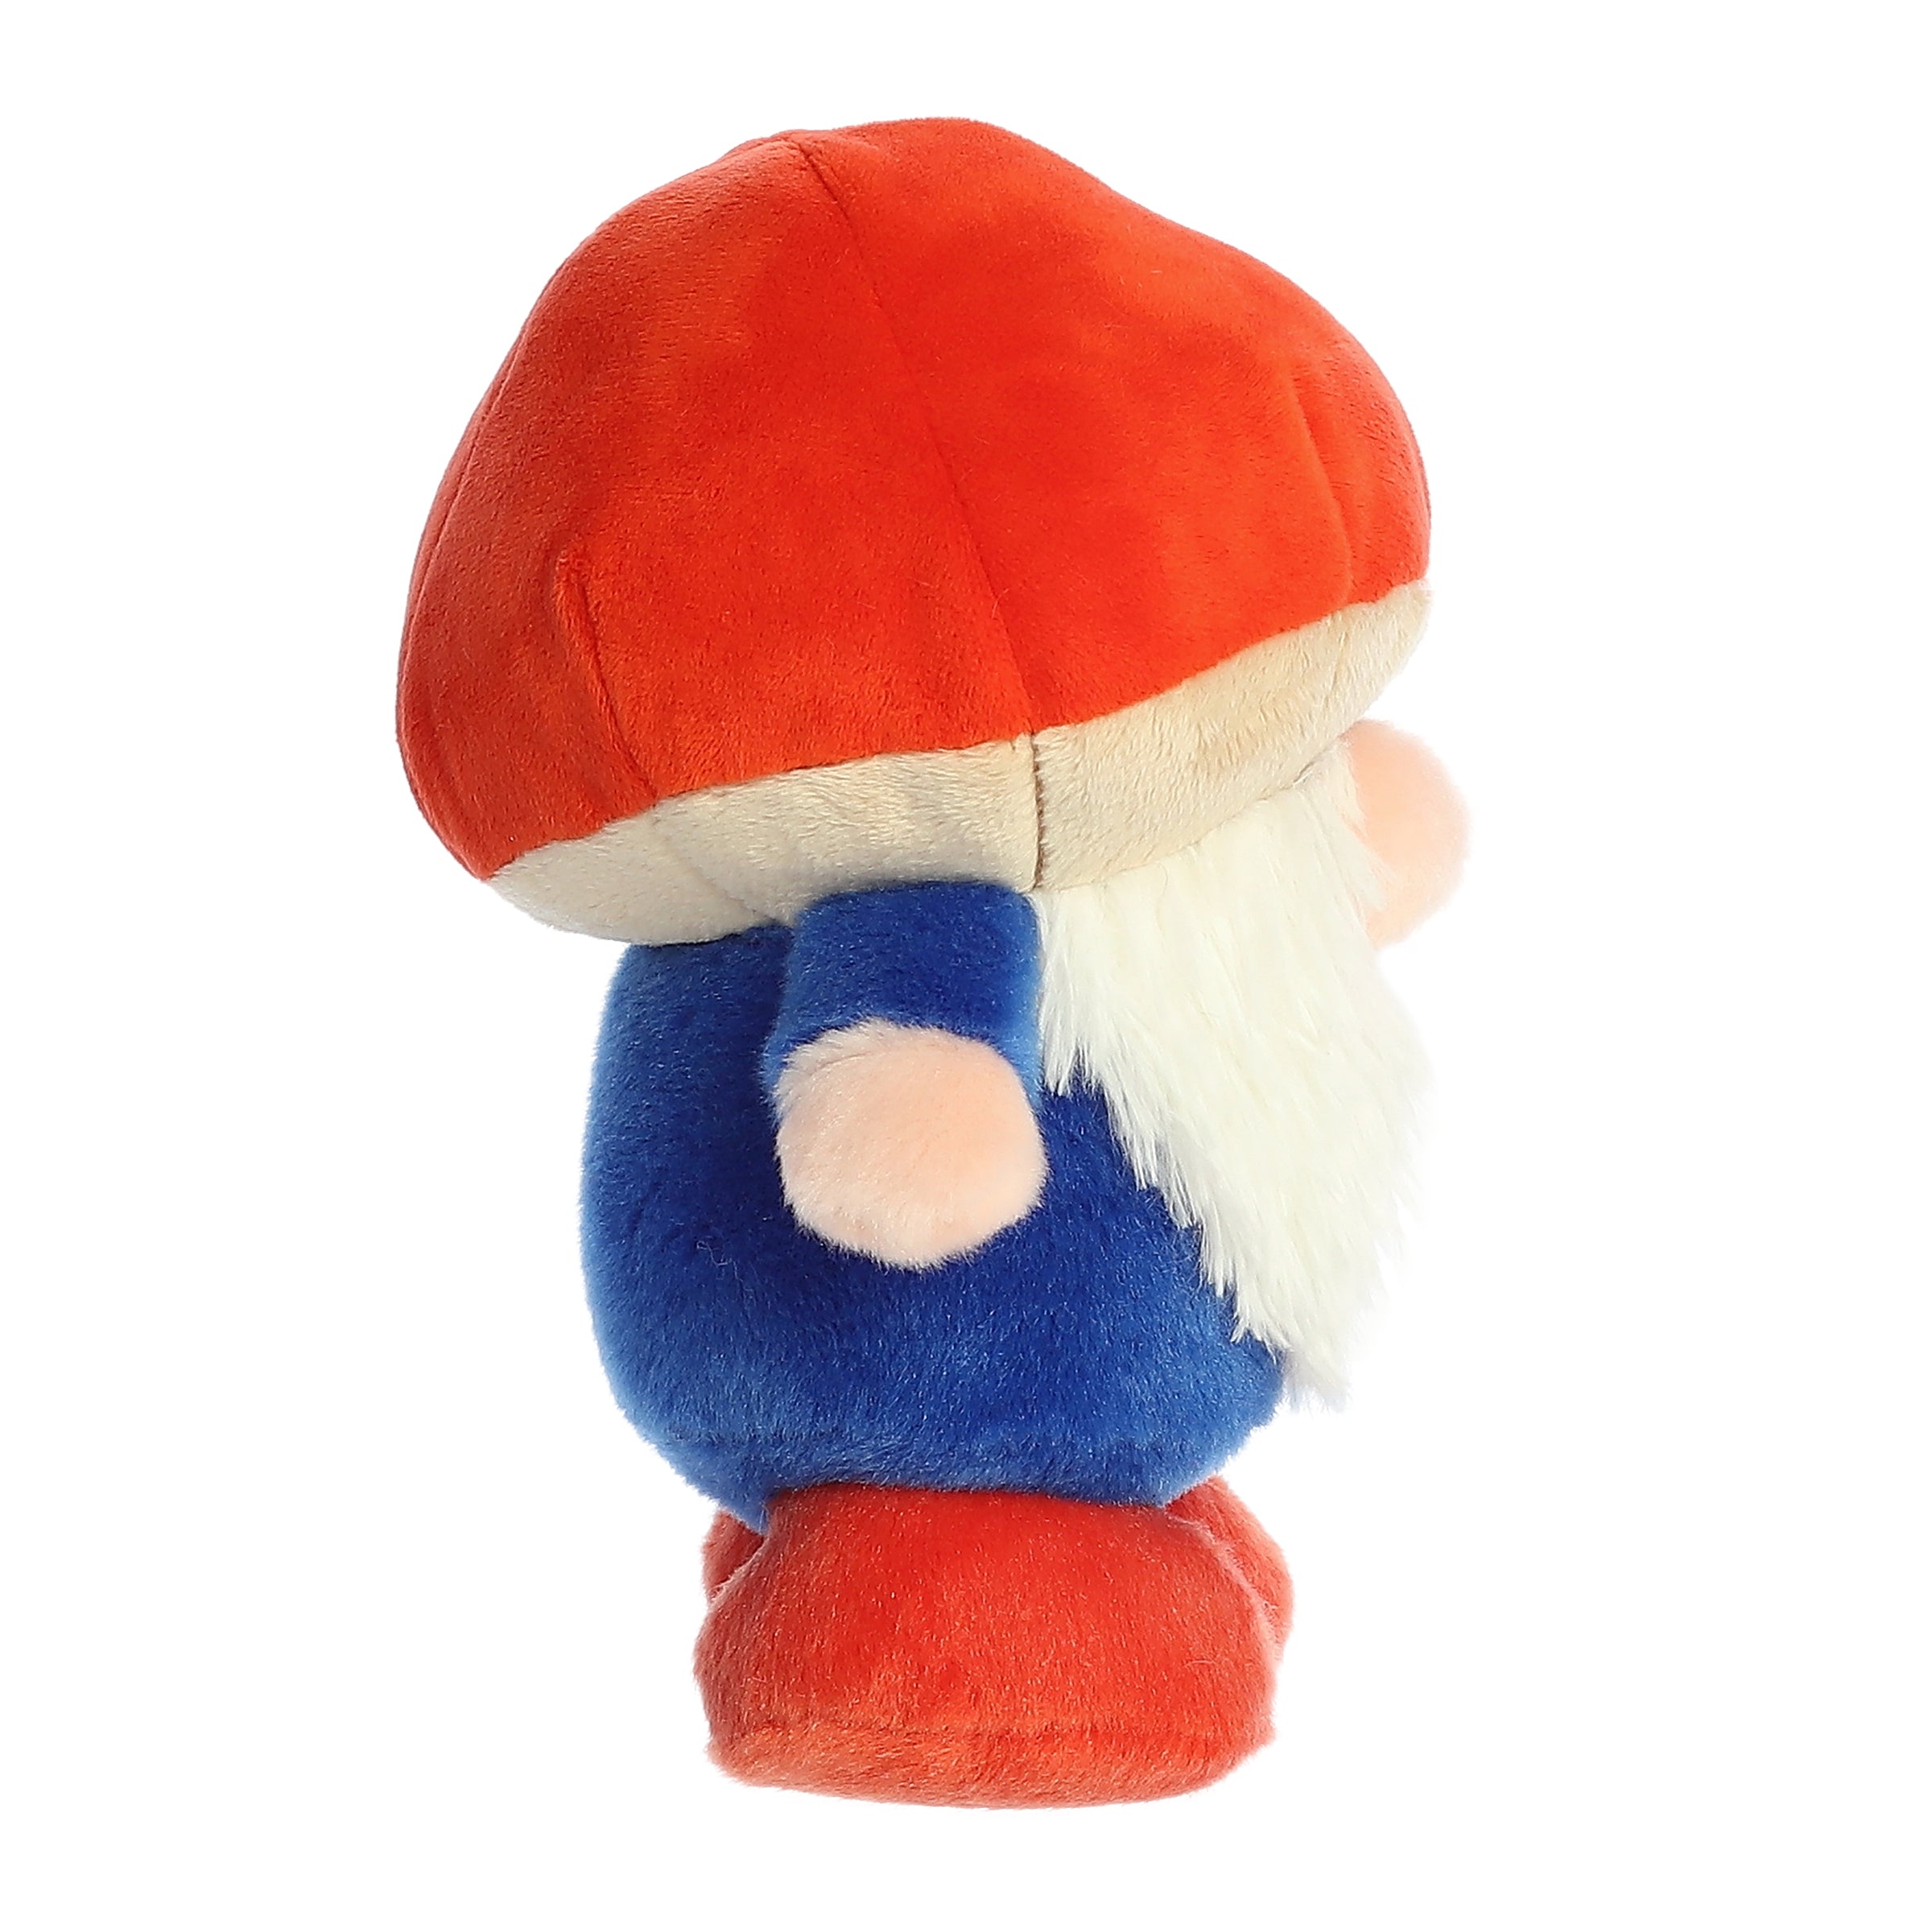 BABY YETI & YETI GNOMLIN Gnome Stuffed Animal Plush by Aurora